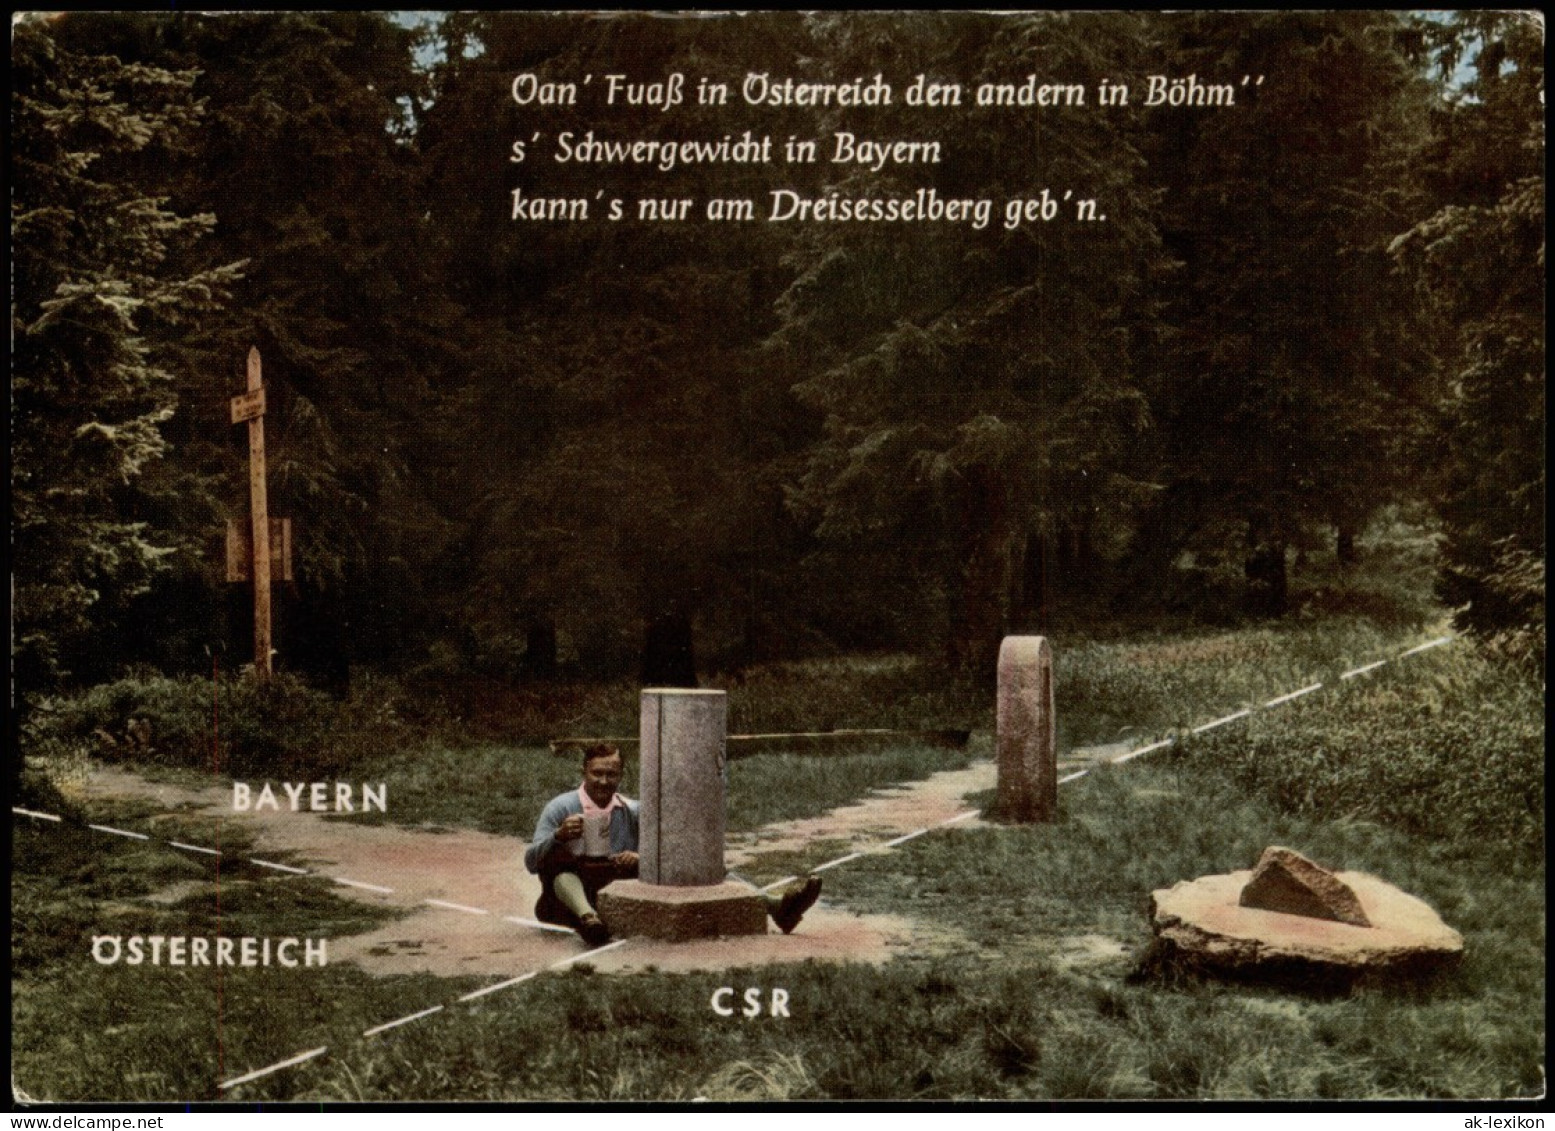 Ansichtskarte  Grenze Bayern Österreich CSR Region Dreisessel 1970 - Douane